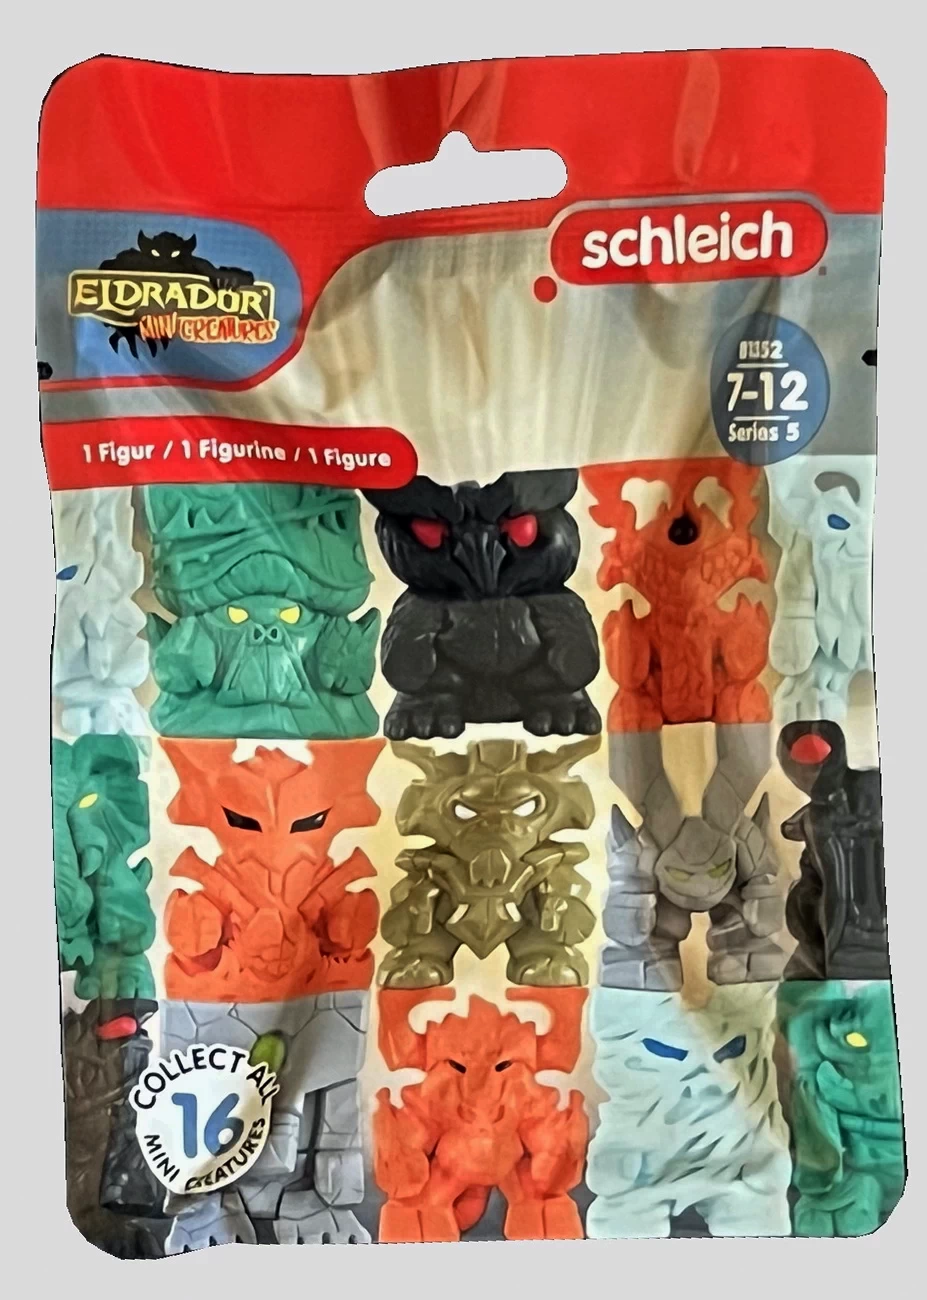 Eldrador Mini Creatures Serie 5 - 1 Sammelfigur - schleich (81352)